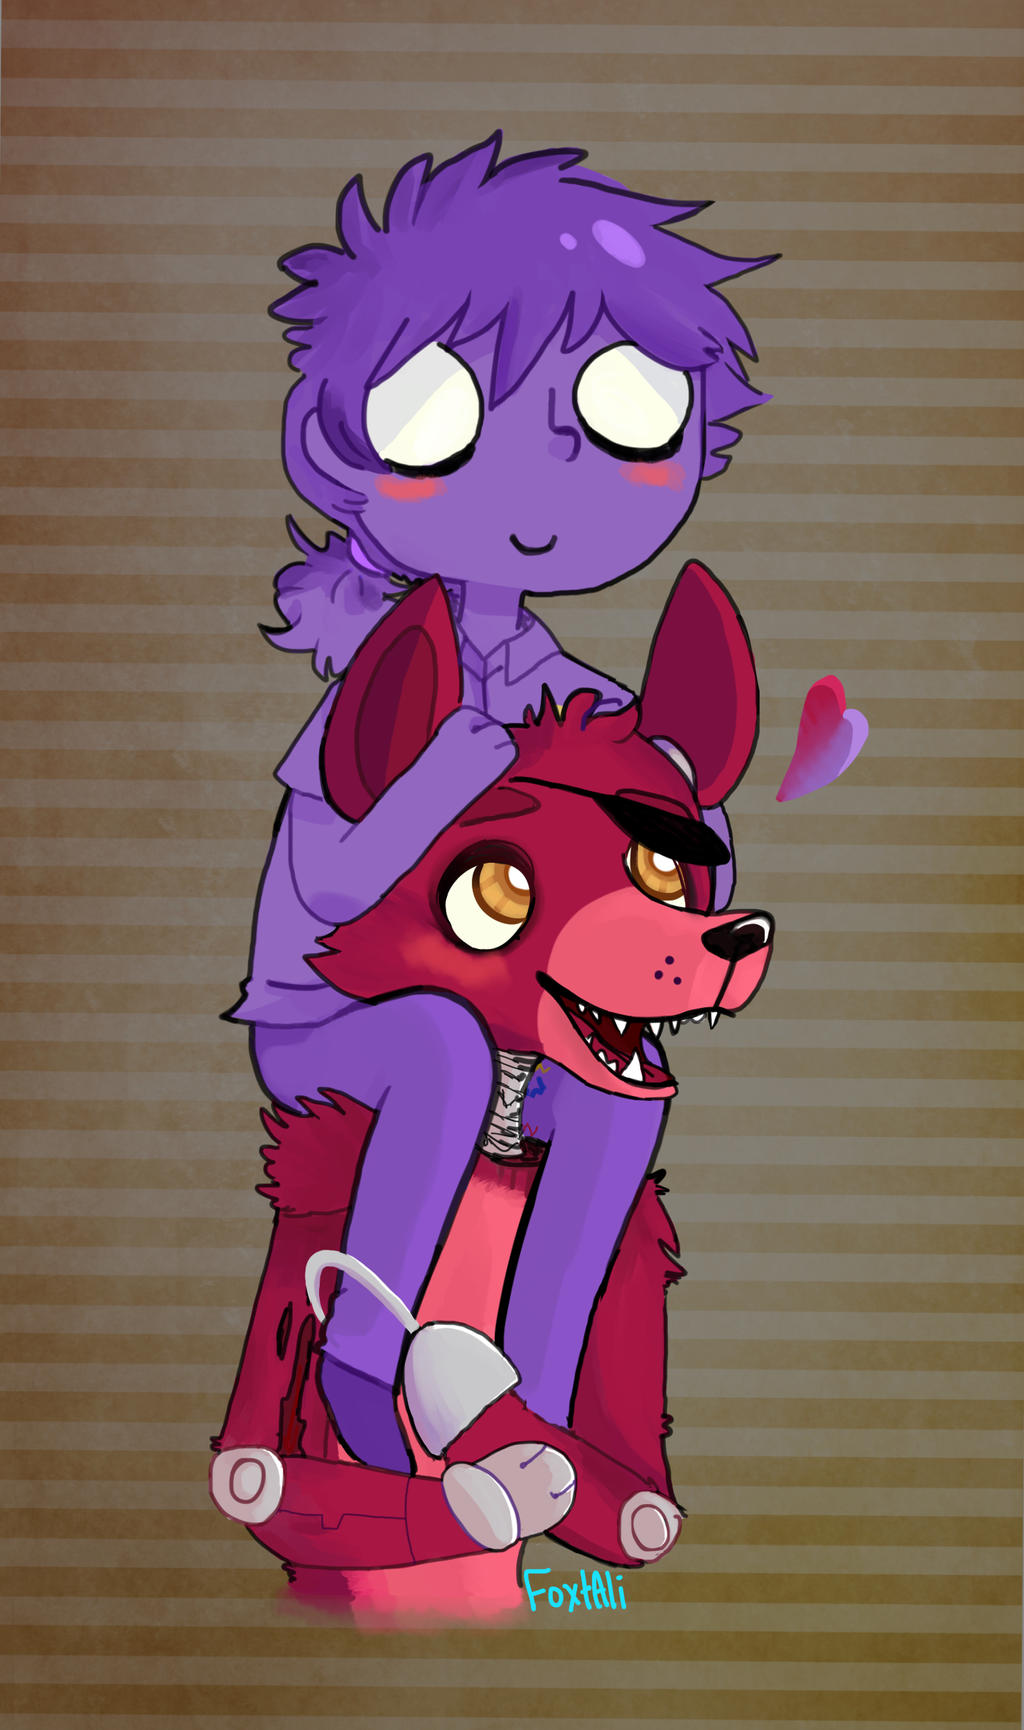 Foxy X Purple Guy By Foxtali On Deviantart